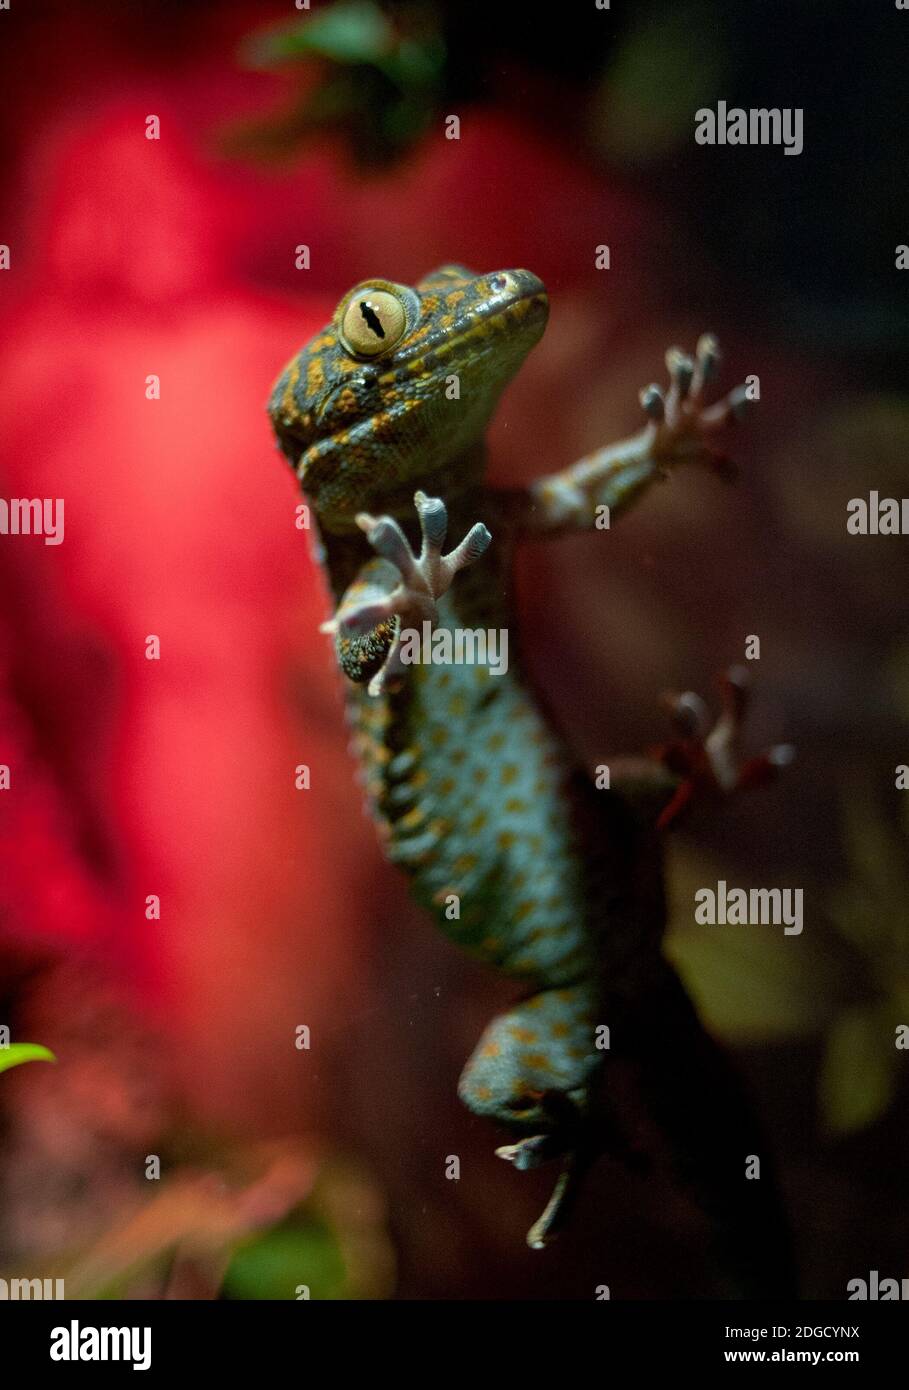 tokay gecko Stock Photo